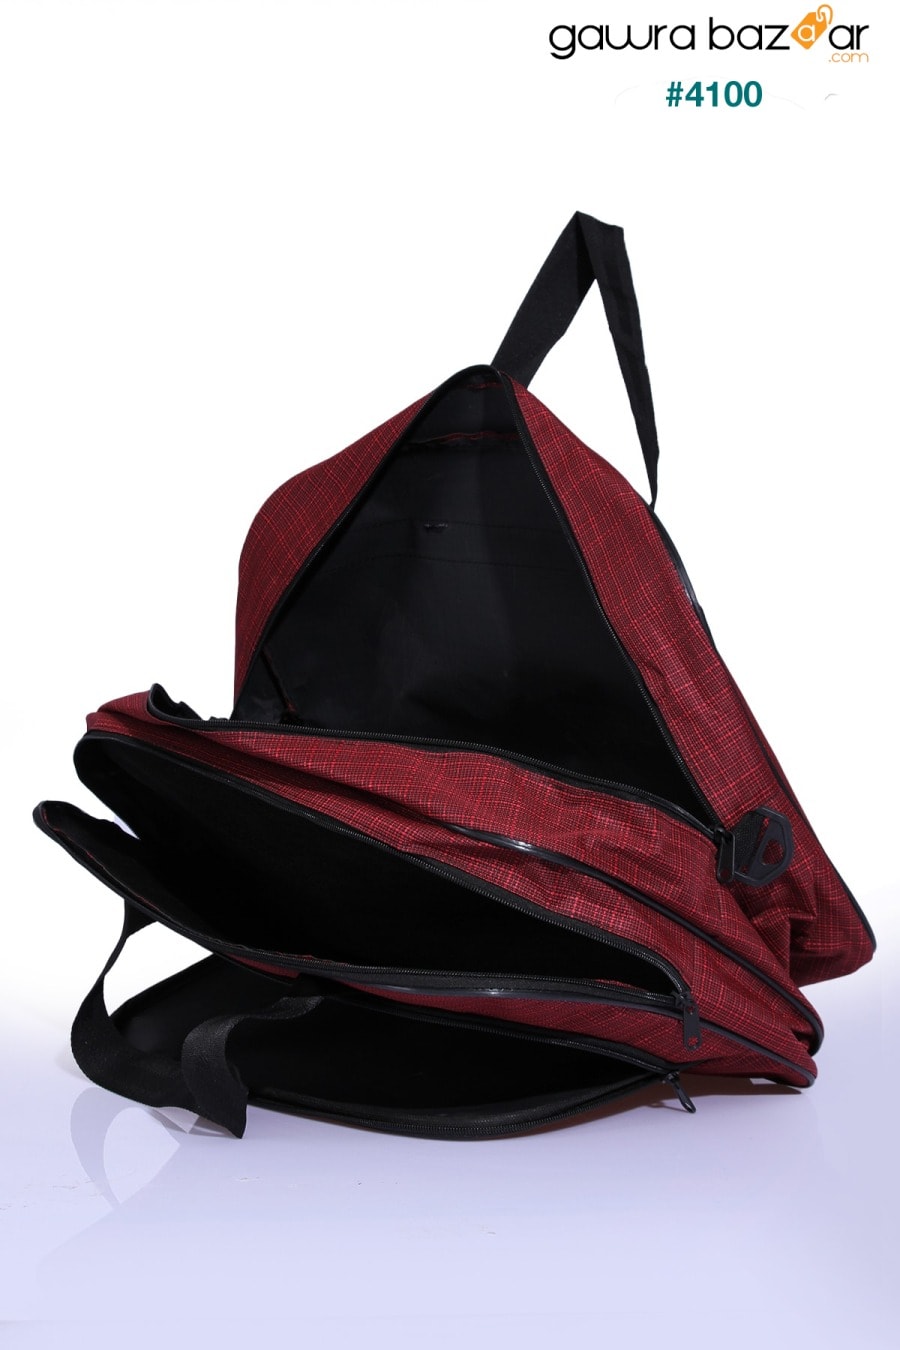 Nil-01 حقيبة مضيفة قماشية للجنسين للسفر والعطلات والمستشفى الرياضي متعدد الأقسام وحقيبة كتف Fiyaka 3